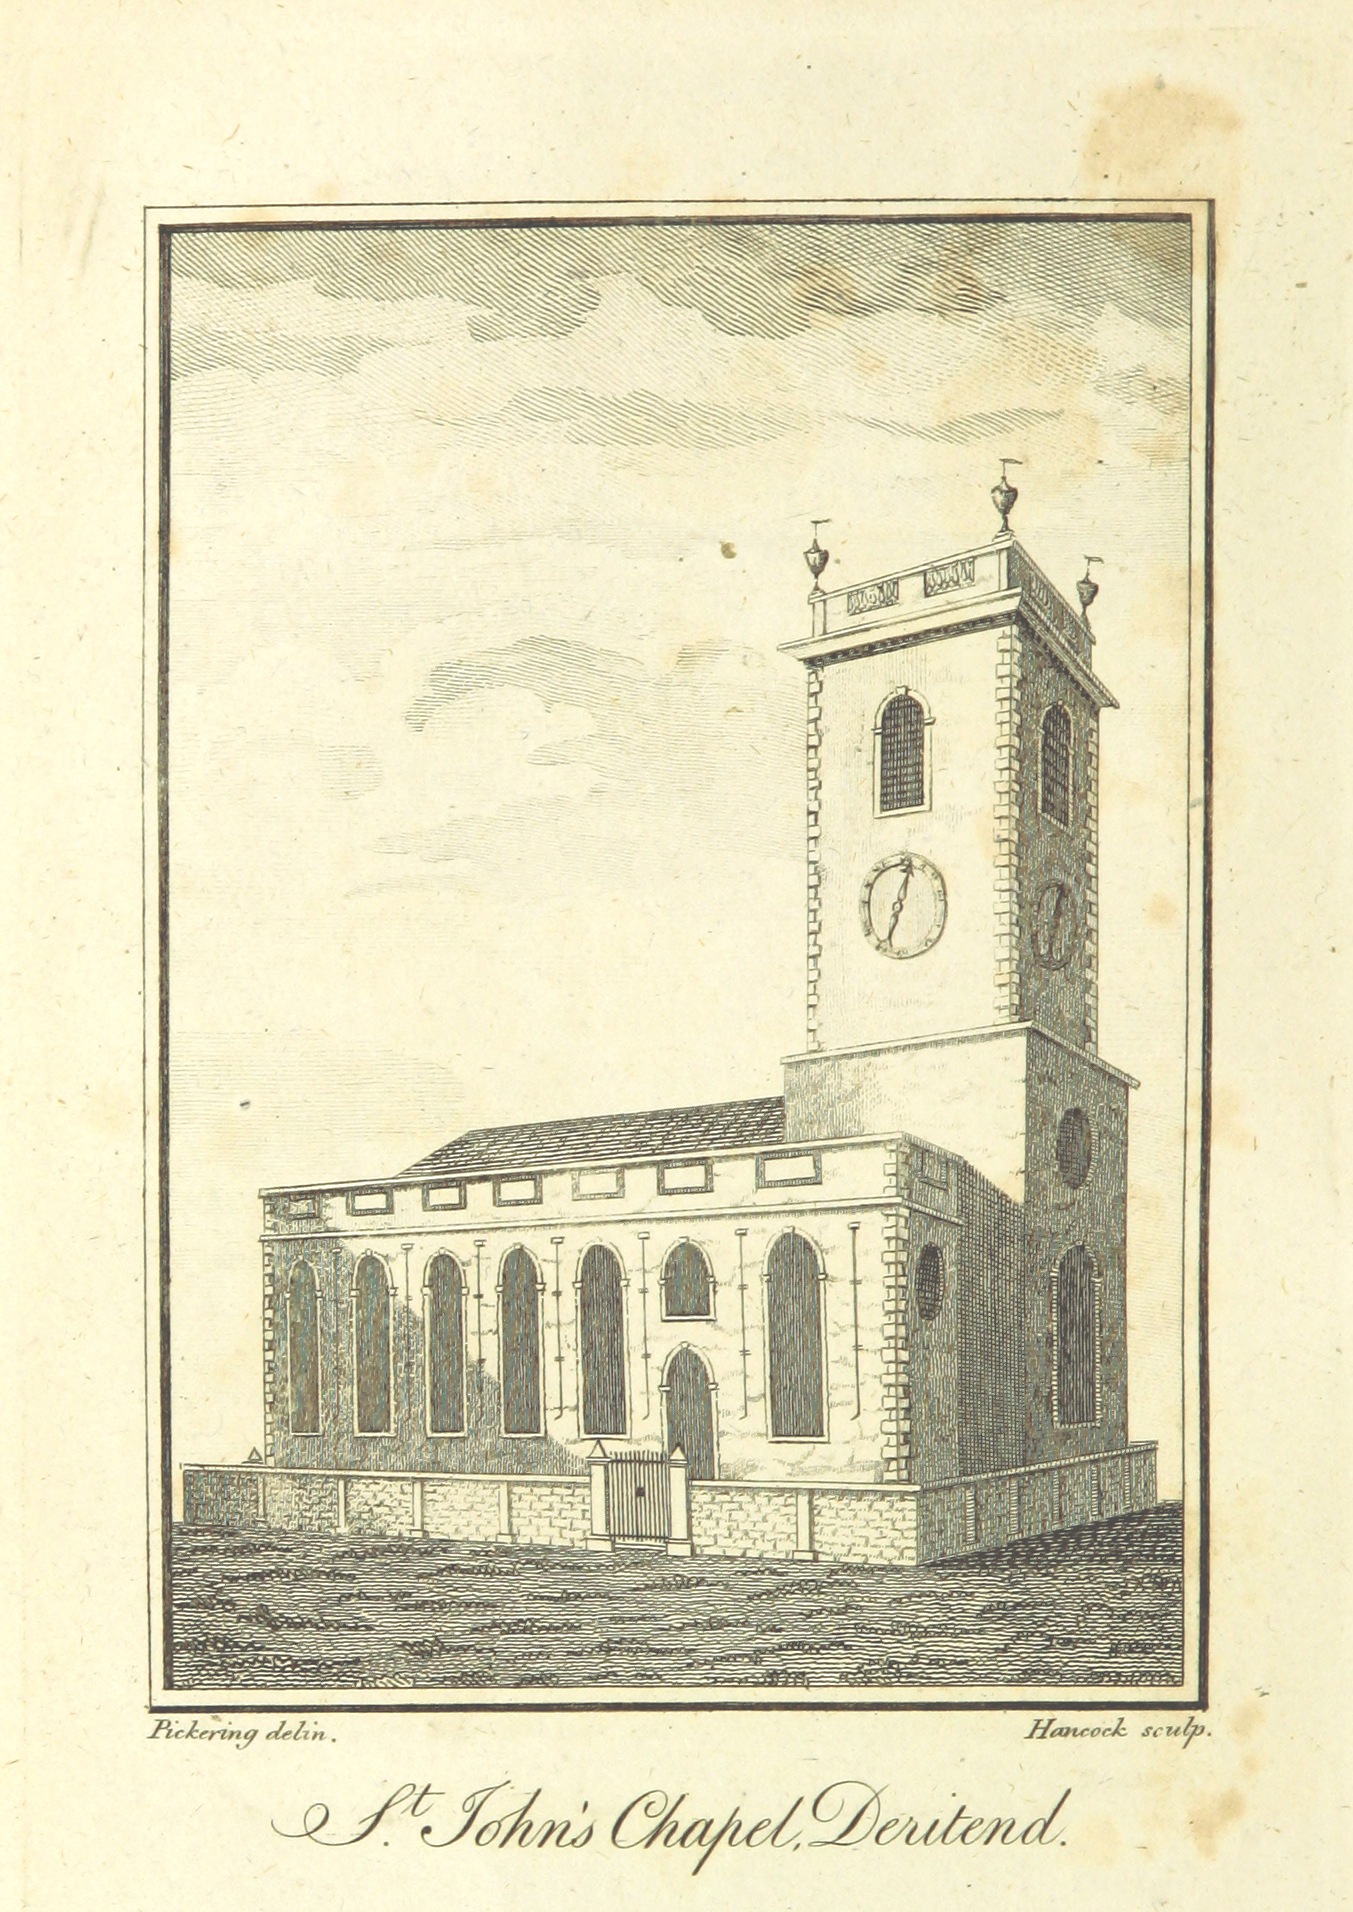 St John's Church, Deritend